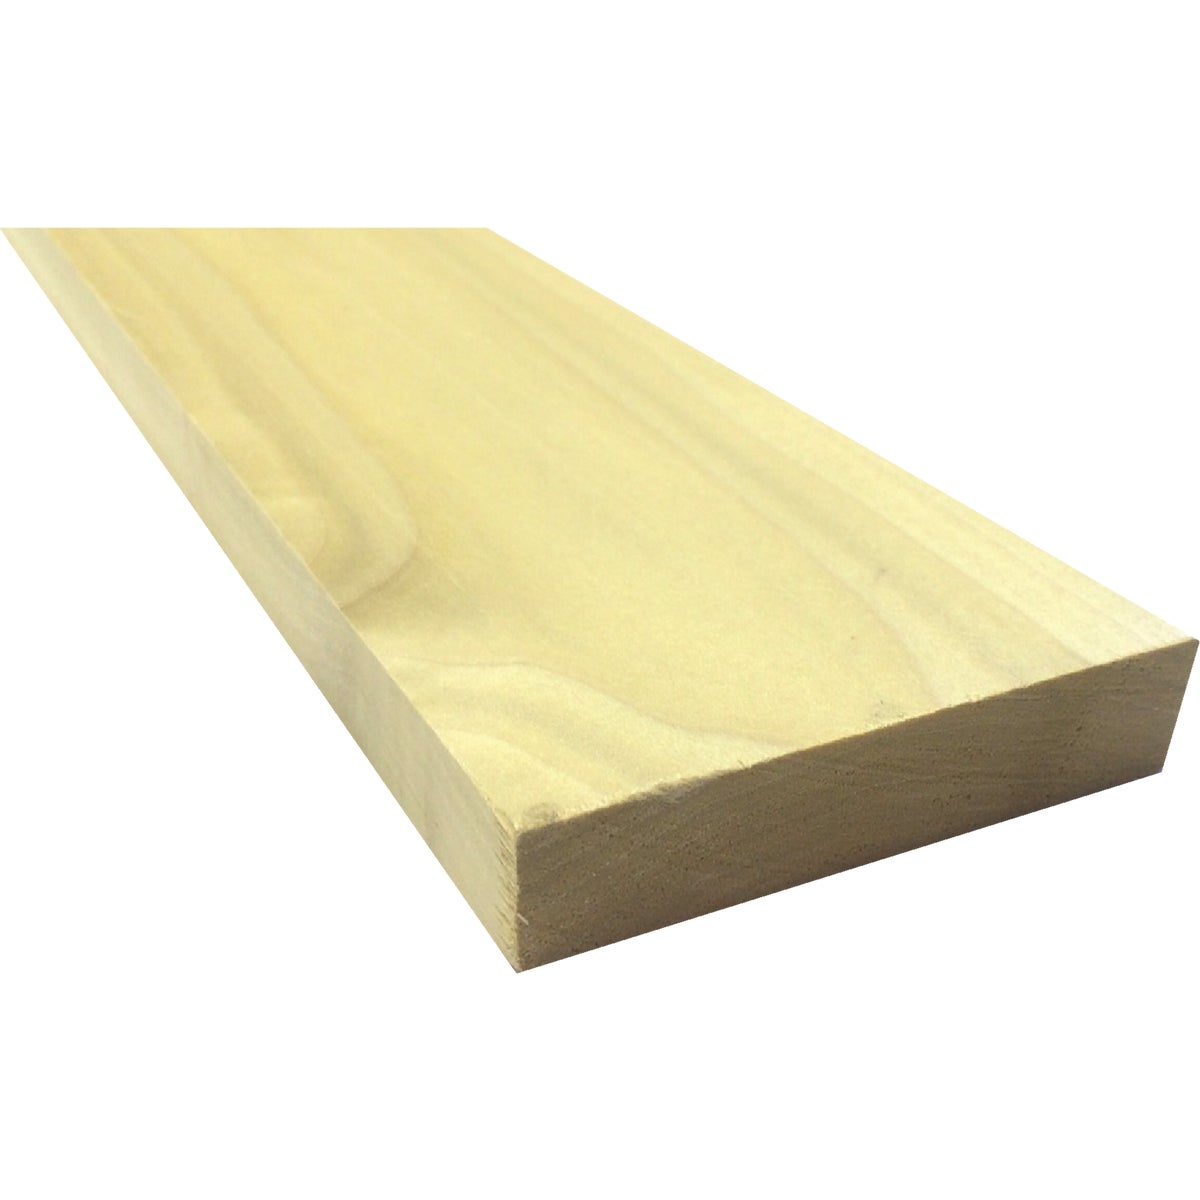 Waddell 1 In. x 4 In. x 4 Ft. Poplar Wood Board